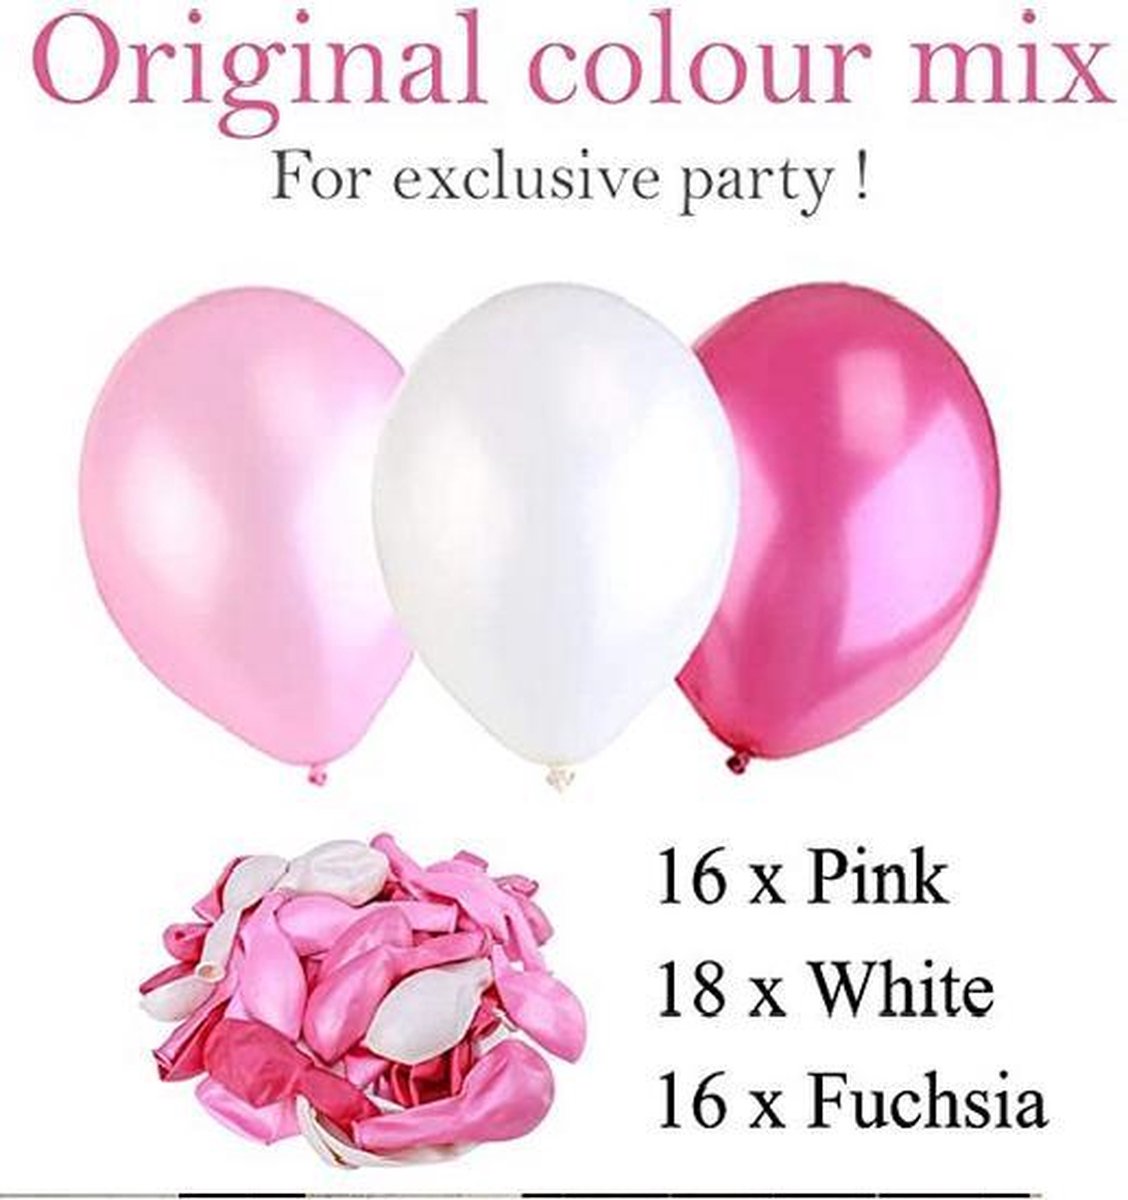 50 Ballons Rose Fuchsia en latex à gonfler